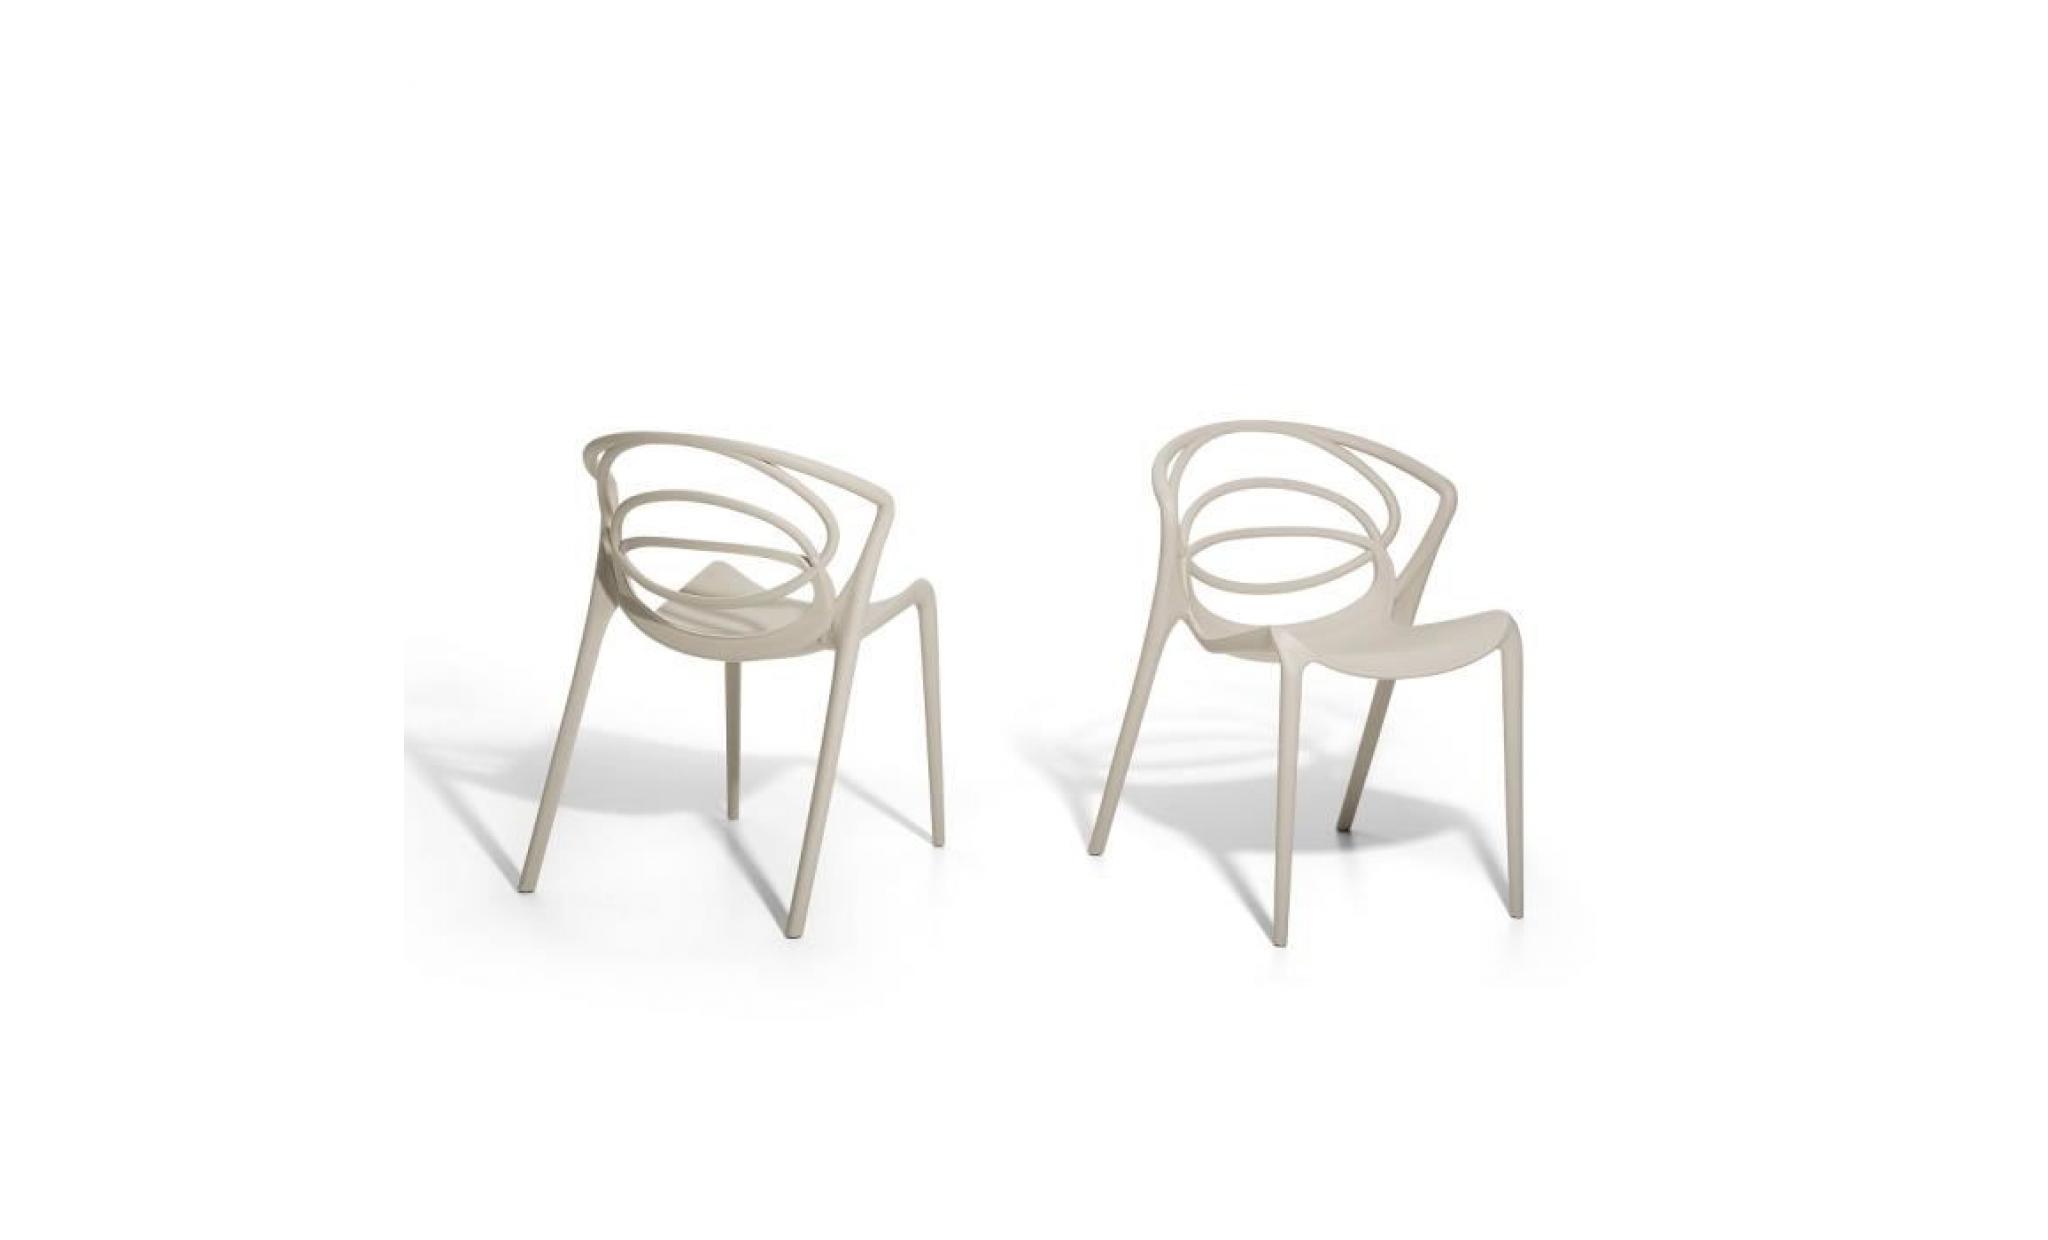 Chaise de jardin design - siège en plastique beige - Bend pas cher